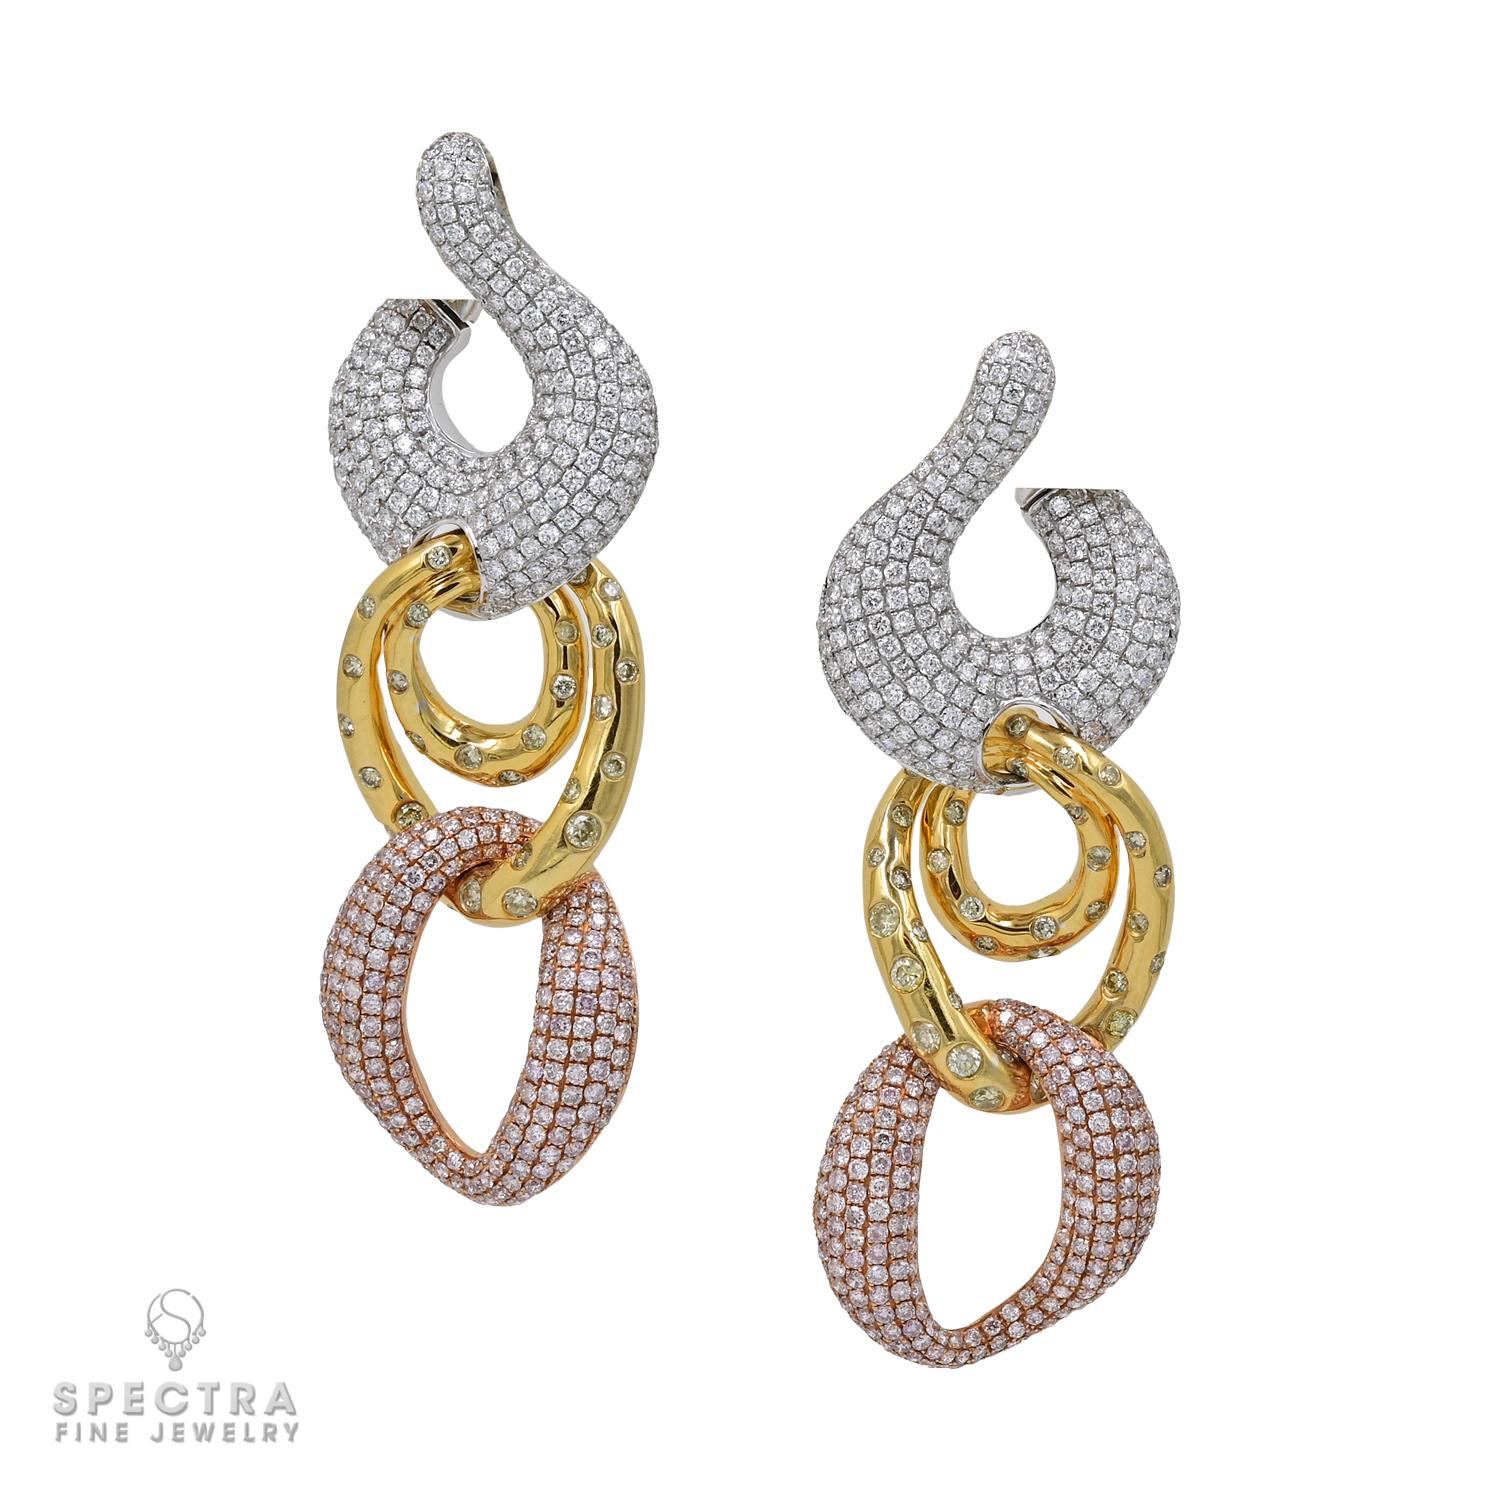 Round Cut Diamond Chain Link Necklace Earrings Demi Parure Suite For Sale